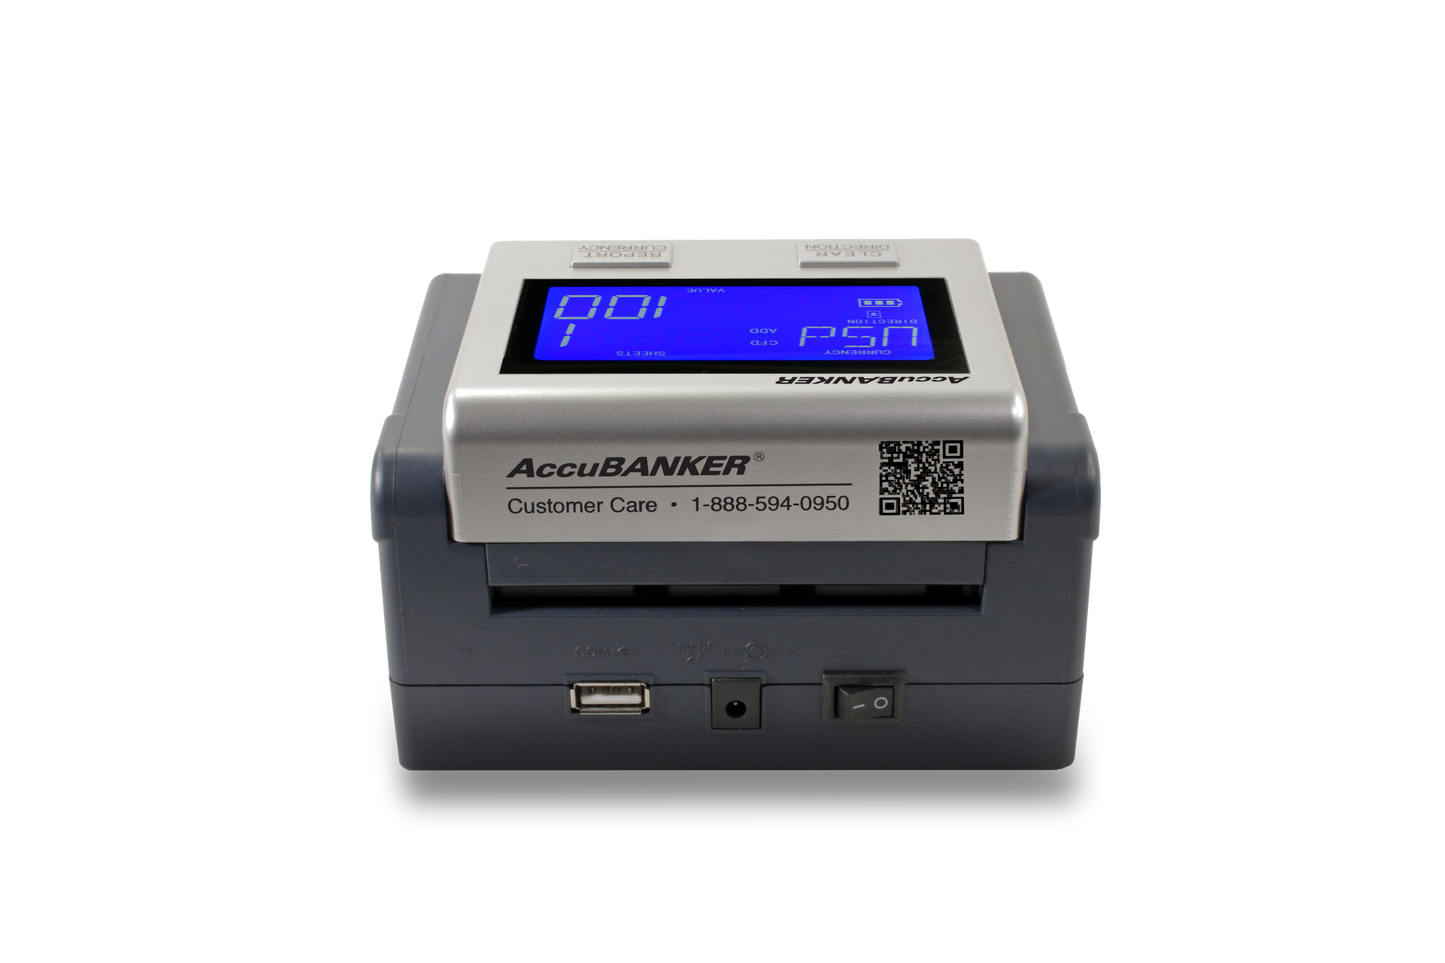 Detector de billetes falsos con batería D585